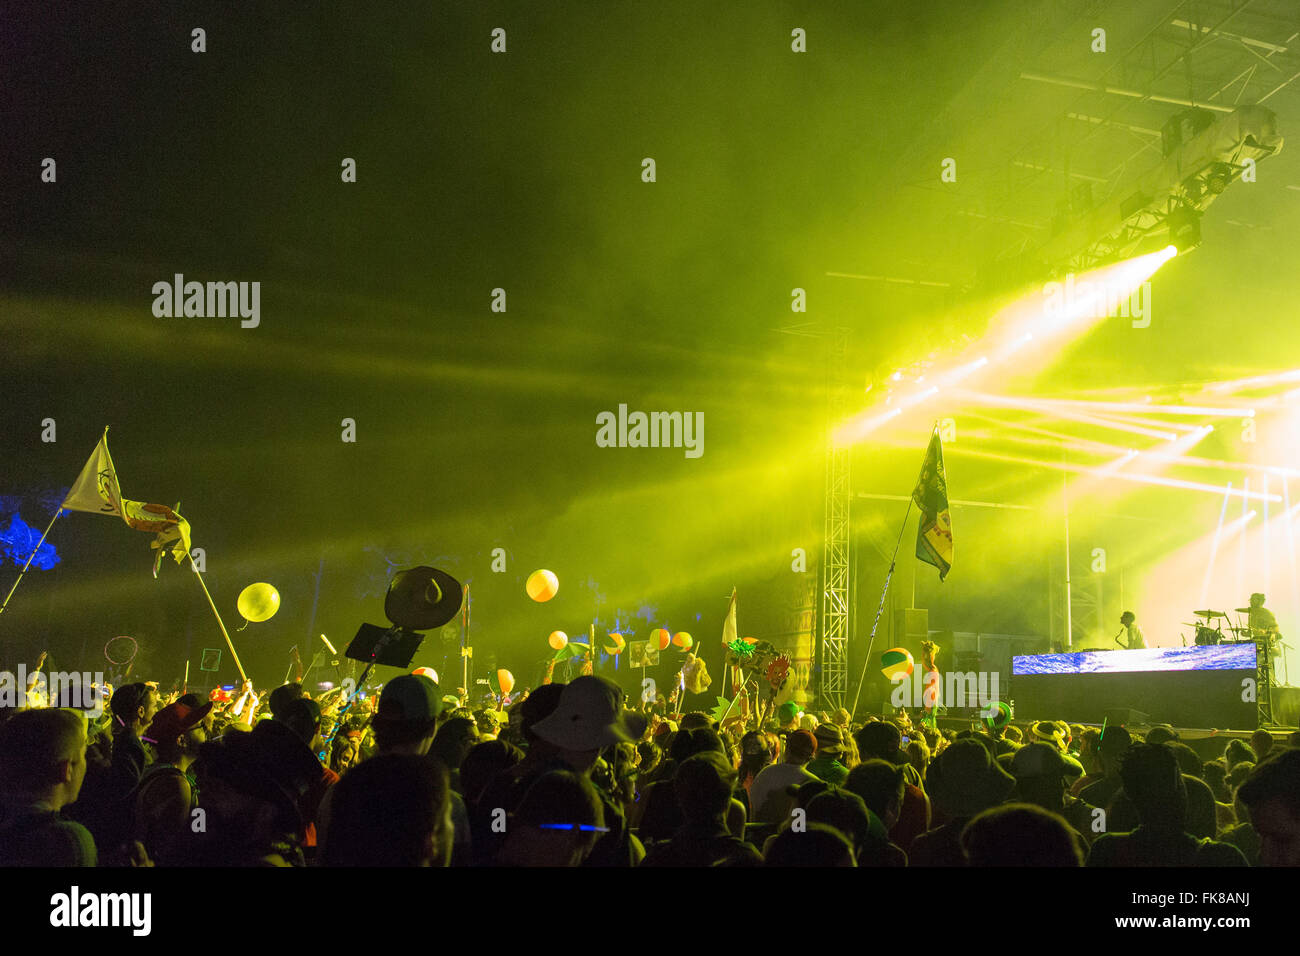 5 marzo 2016 - Okeechobee, Florida, Stati Uniti - Luce le fuoriuscite dal palco durante grandi gigantesca a Okeechobee Music Festival di Okeechobee, Florida (credito Immagine: © Daniel DeSlover via ZUMA filo) Foto Stock